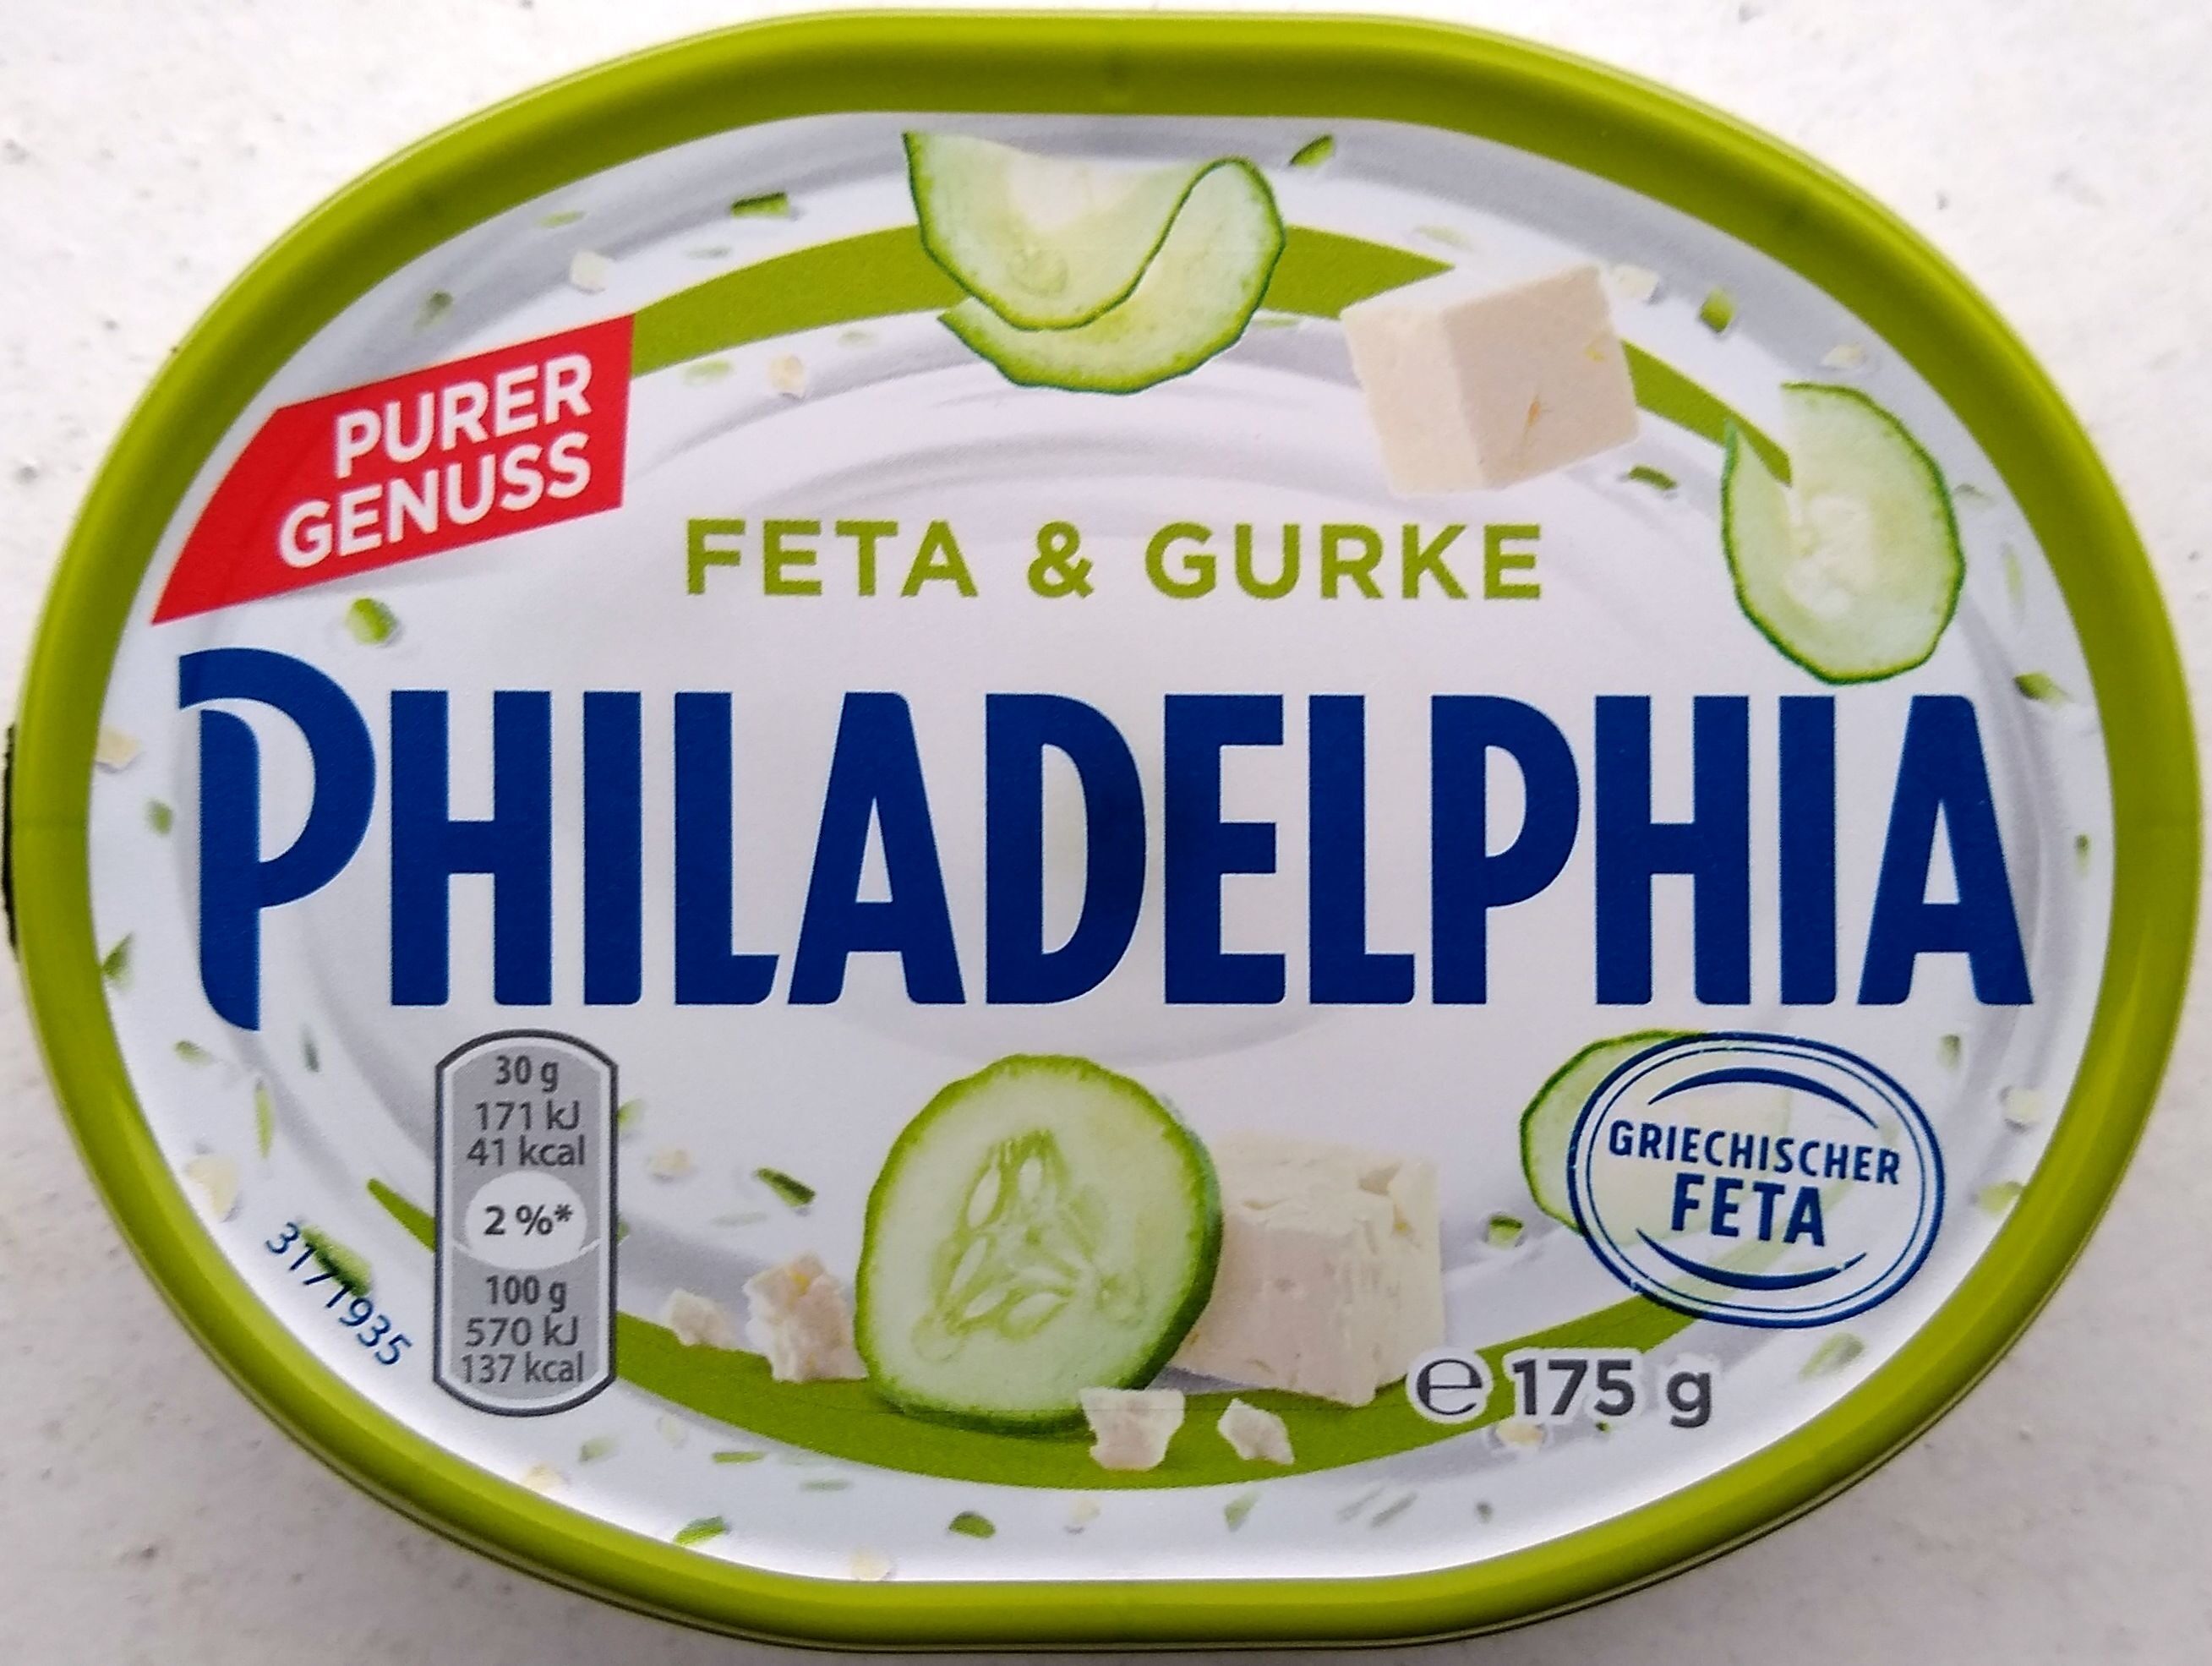 Feta & Gurke Philadelphia - Produkt